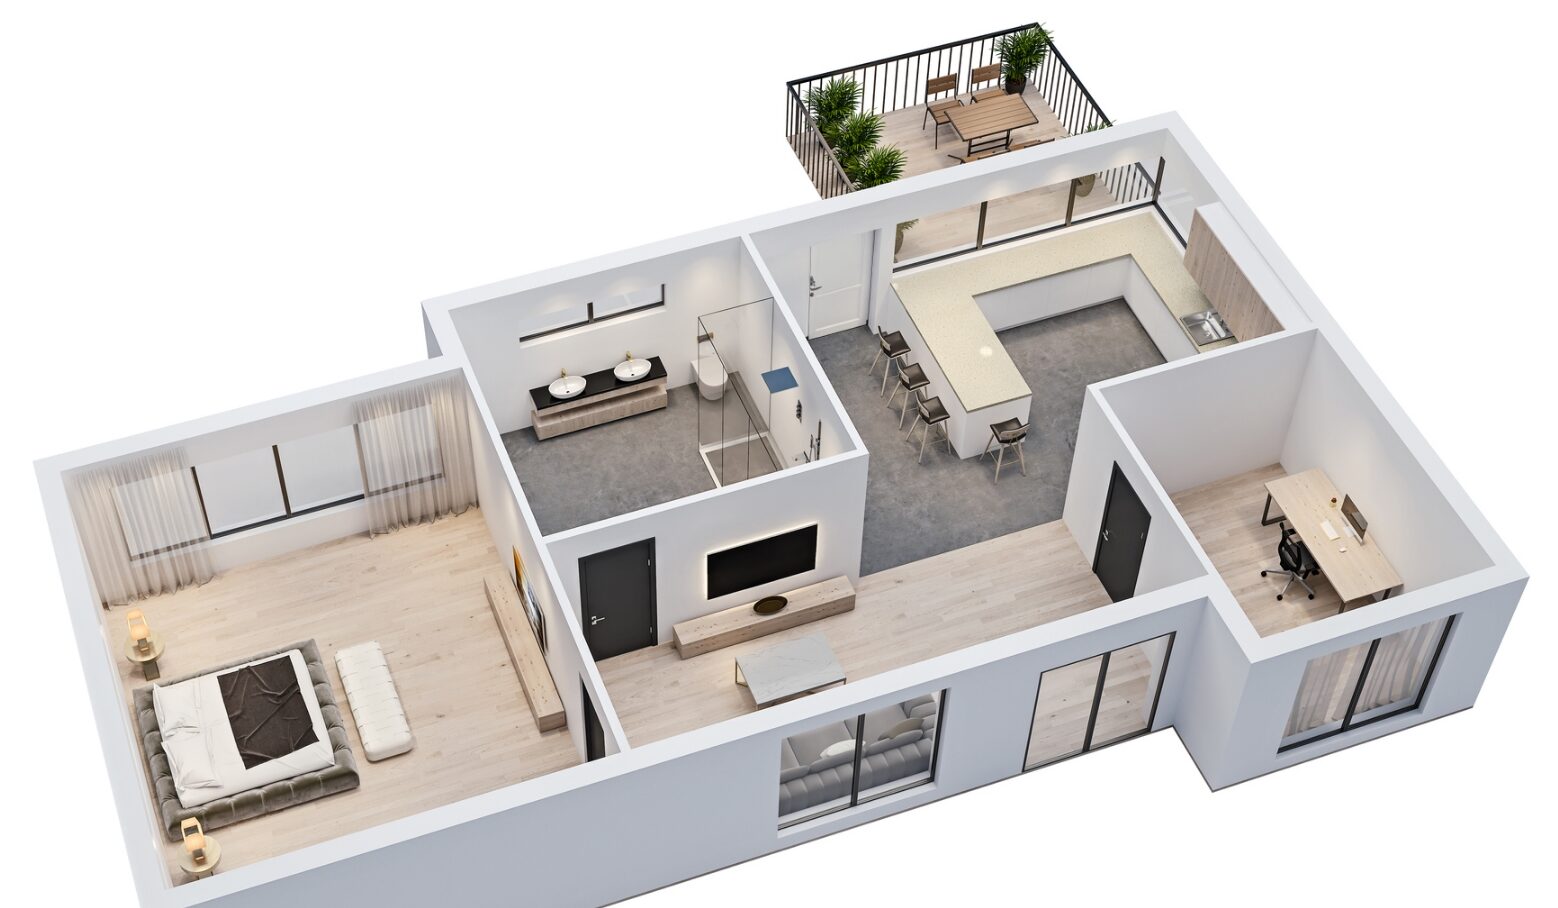 Grundriss eines möblierten Hauses, um die Sicherheitstechnik der Smart Home Lösung aufzuzeigen